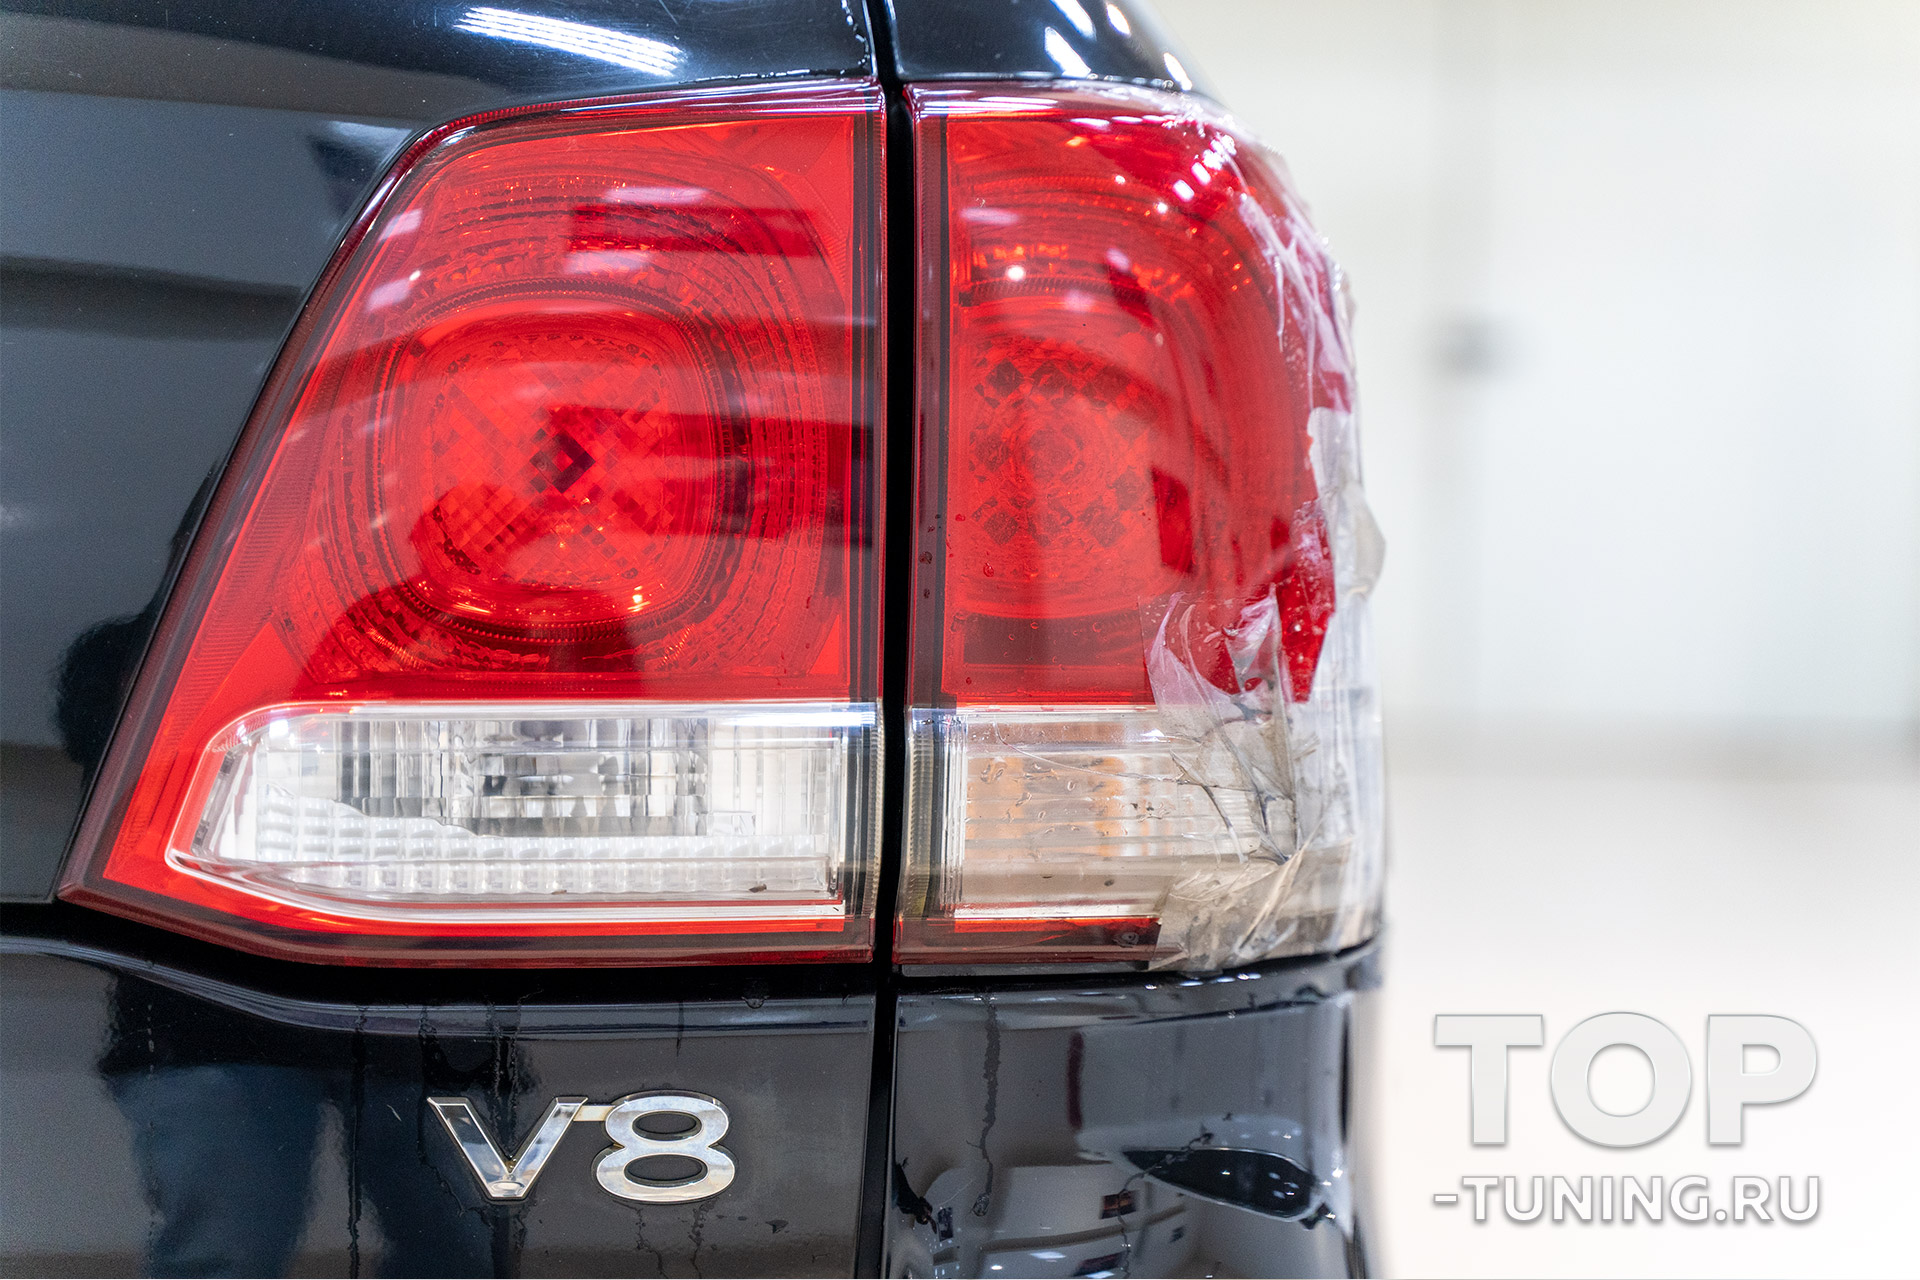 Штатная задняя оптика Toyota Land Cruiser 200 дорест – обзор перед заменой